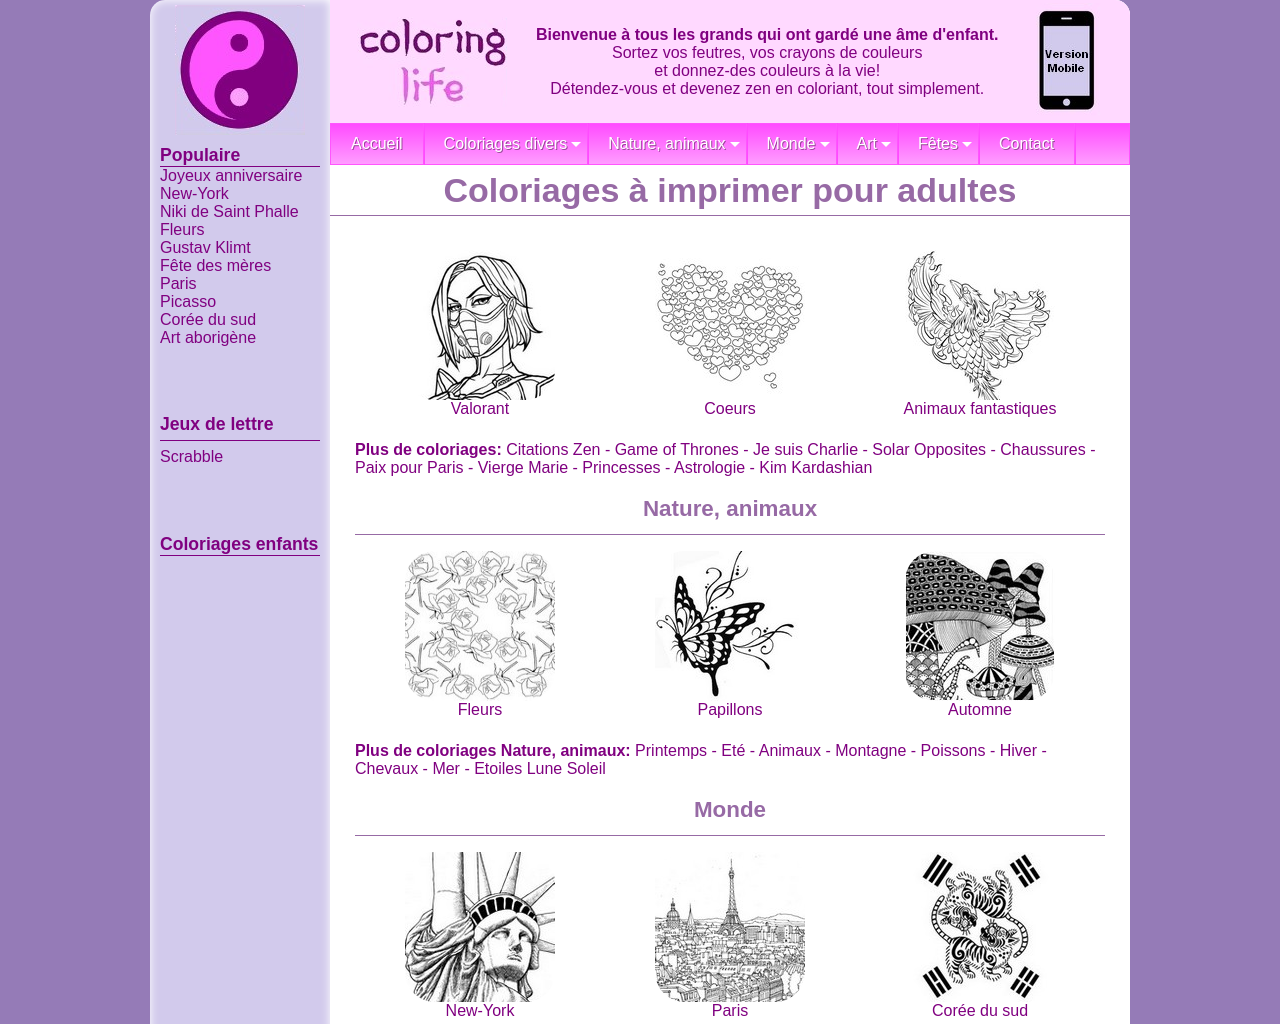 coloring-life.com